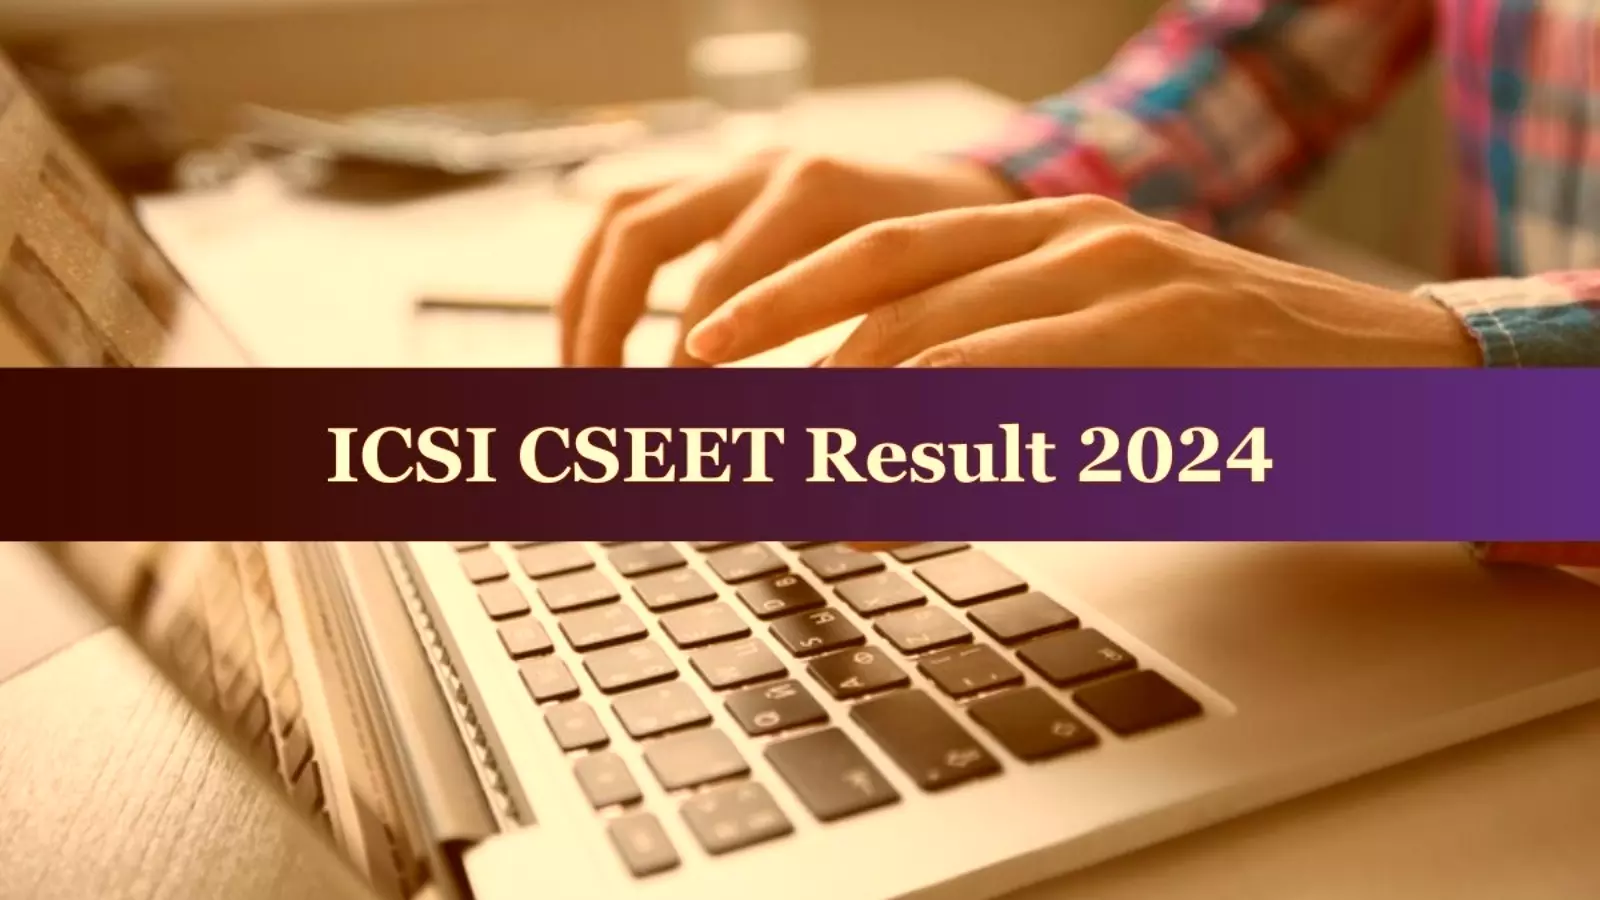 ICSI CSEET results 2024:  ICSI CSEET के परीक्षा परिणाम कल 20 जुलाई 2024 को होंगे घोषित, जानिये क्यों विशेष थी ये परीक्षा